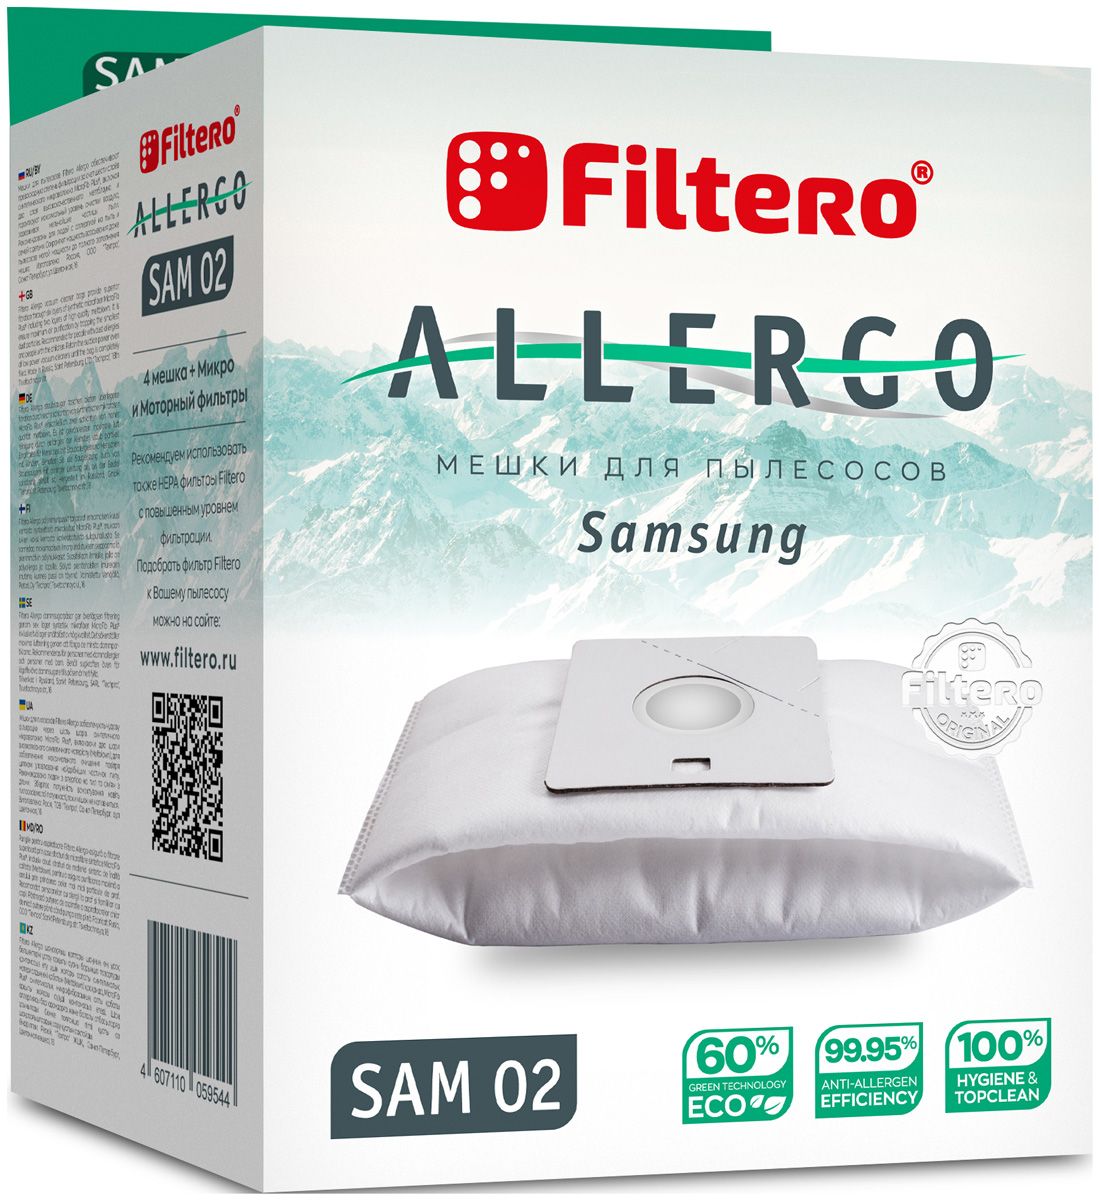 цена Пылесборники Filtero SAM 02 Allergo 4 шт. + моторный фильтр и микрофильтр